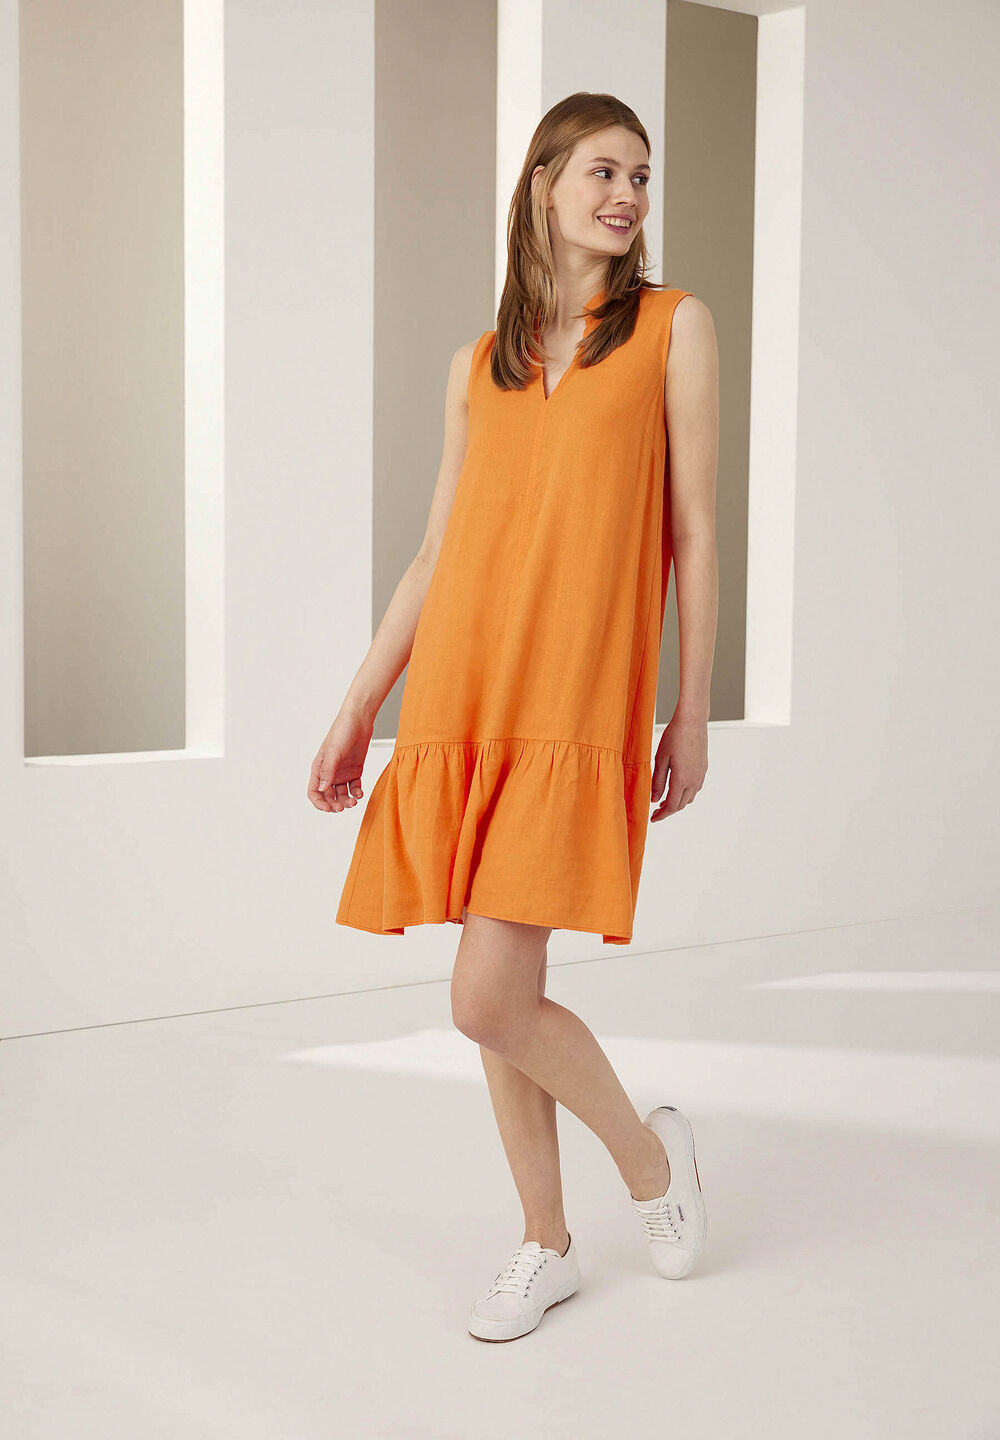 Leinen/Viskose Kleid, fresh orange, Sommer-Kollektion, orangeDetailansicht 1